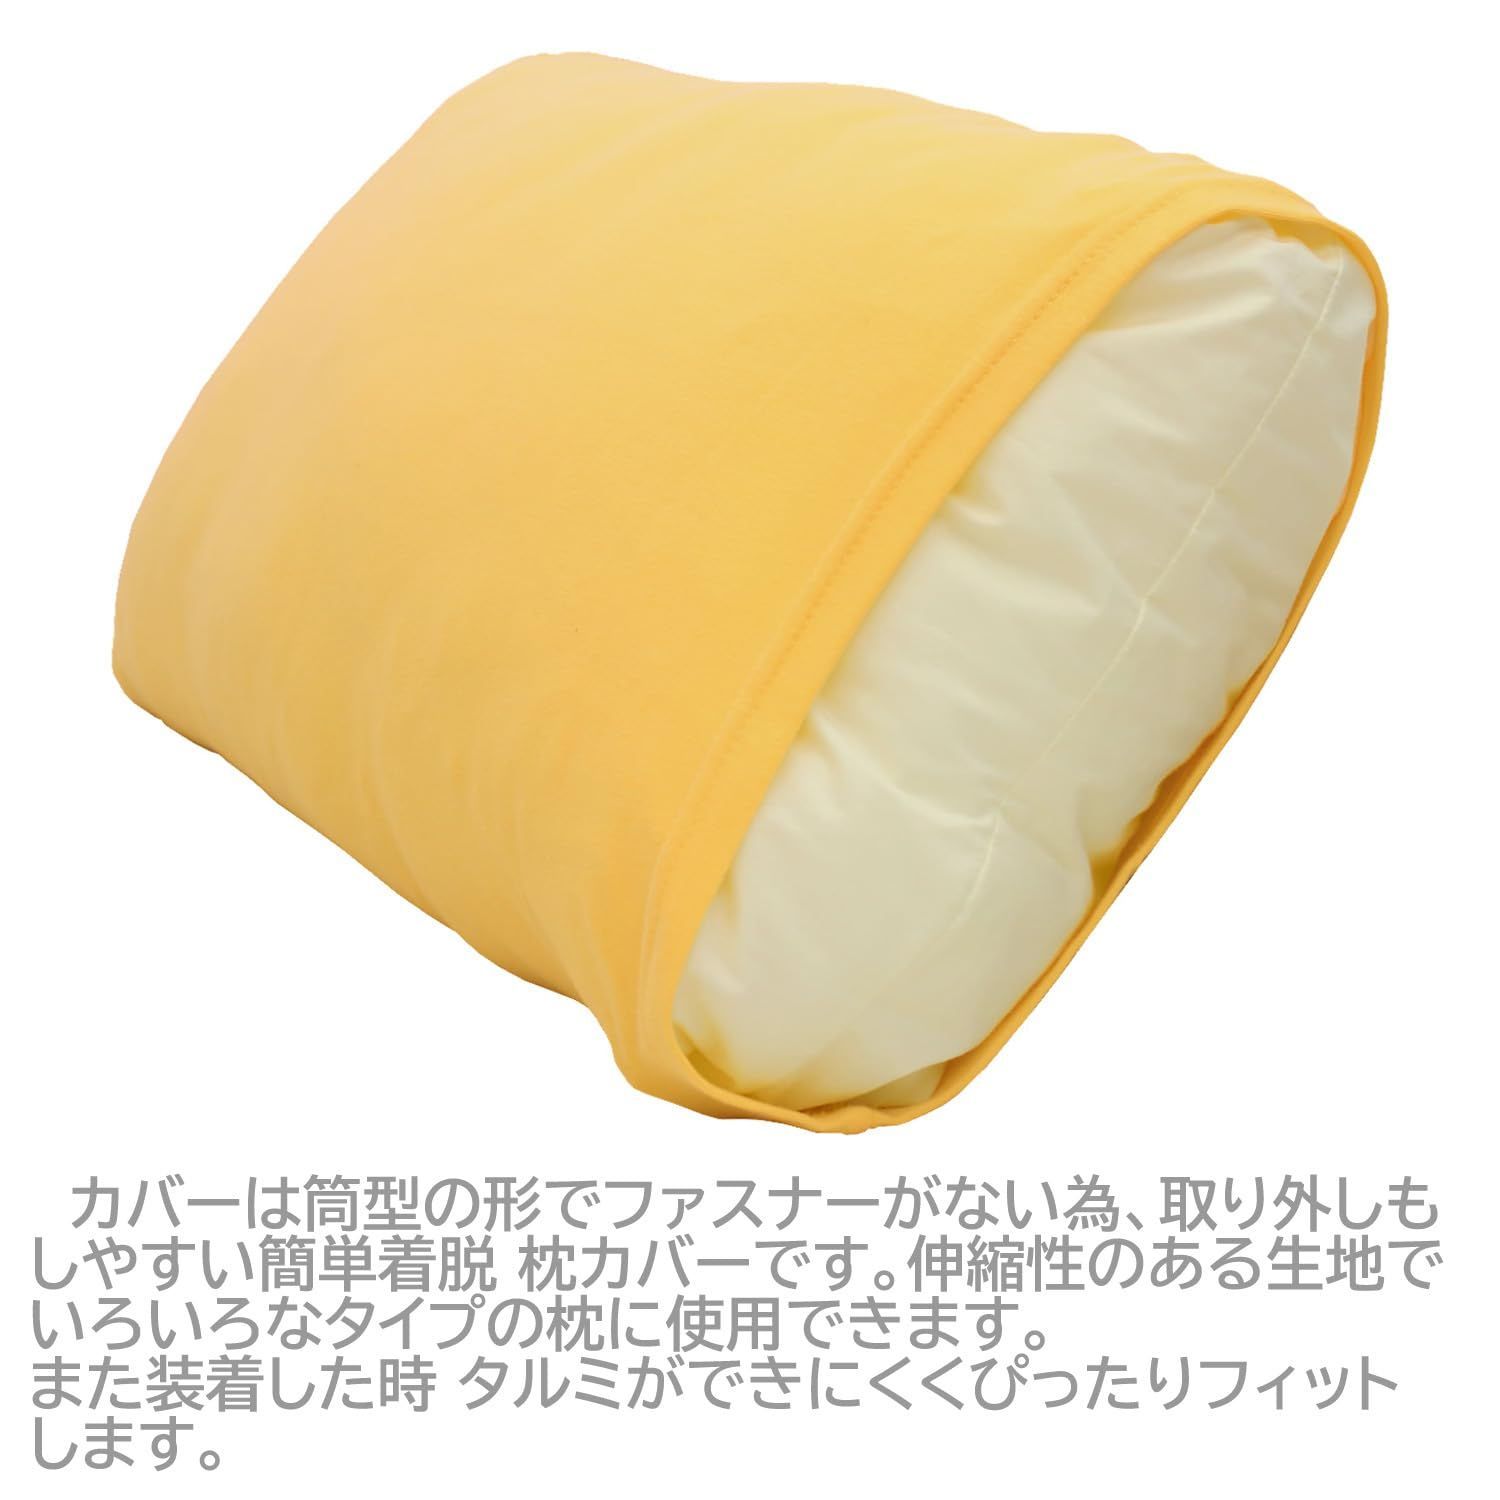 メリーナイト 枕カバー のびのびタイプ イエロー 約32×52cm 筒型 綿ニット素材 ピタッと装着 いろいろな枕にフィット 洗える オールシーズン  NT3252-35 - メルカリ